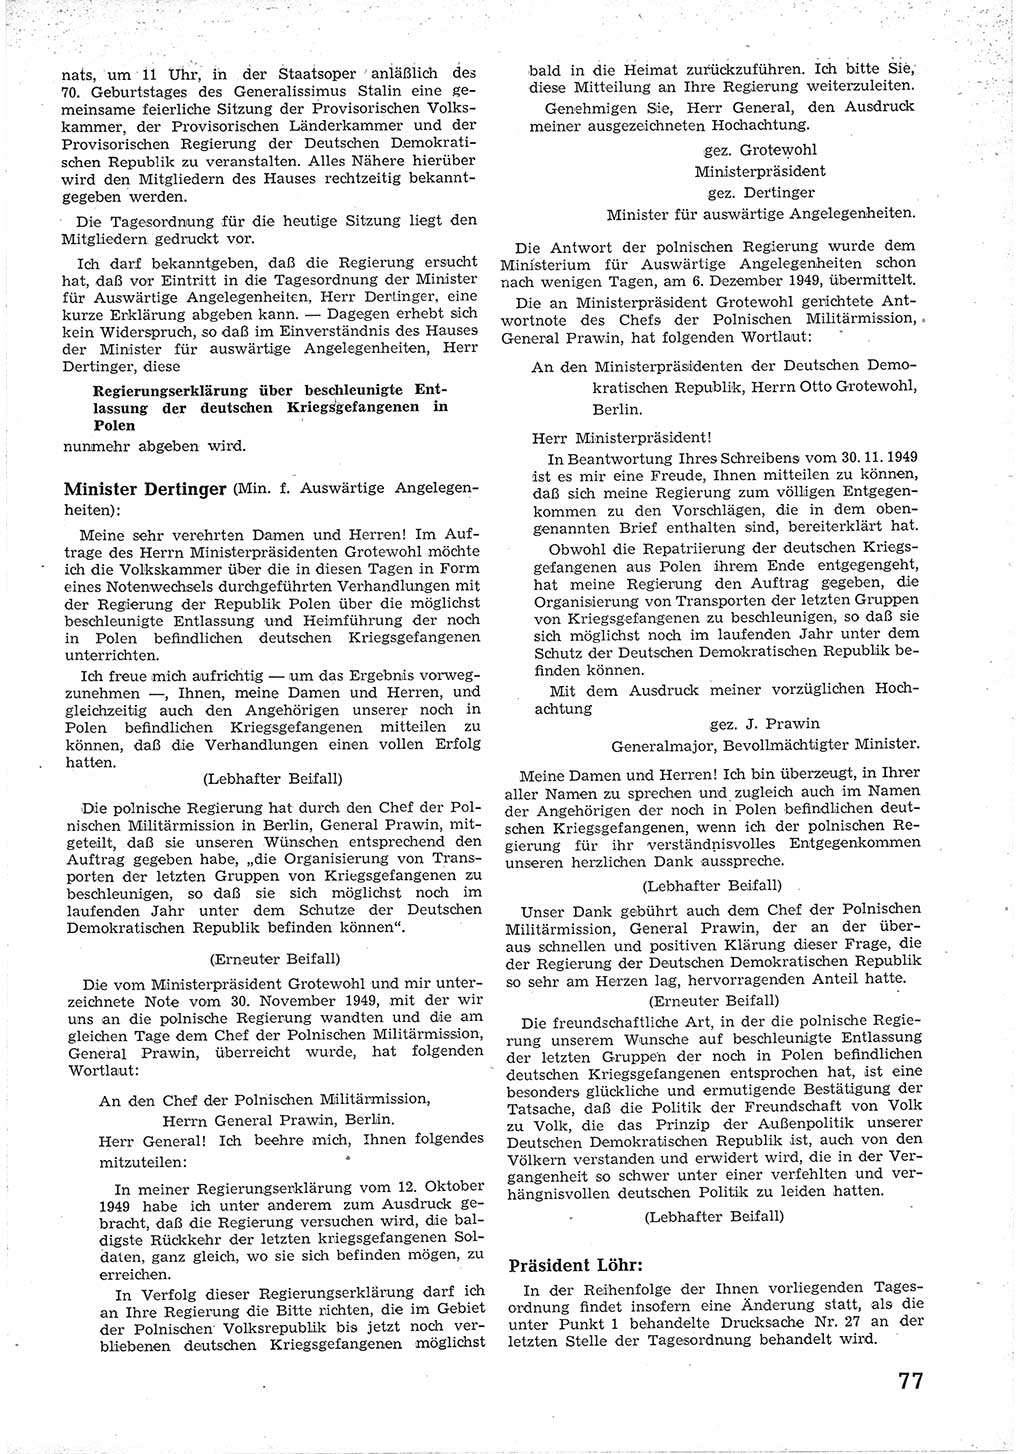 Provisorische Volkskammer (VK) der Deutschen Demokratischen Republik (DDR) 1949-1950, Dokument 89 (Prov. VK DDR 1949-1950, Dok. 89)